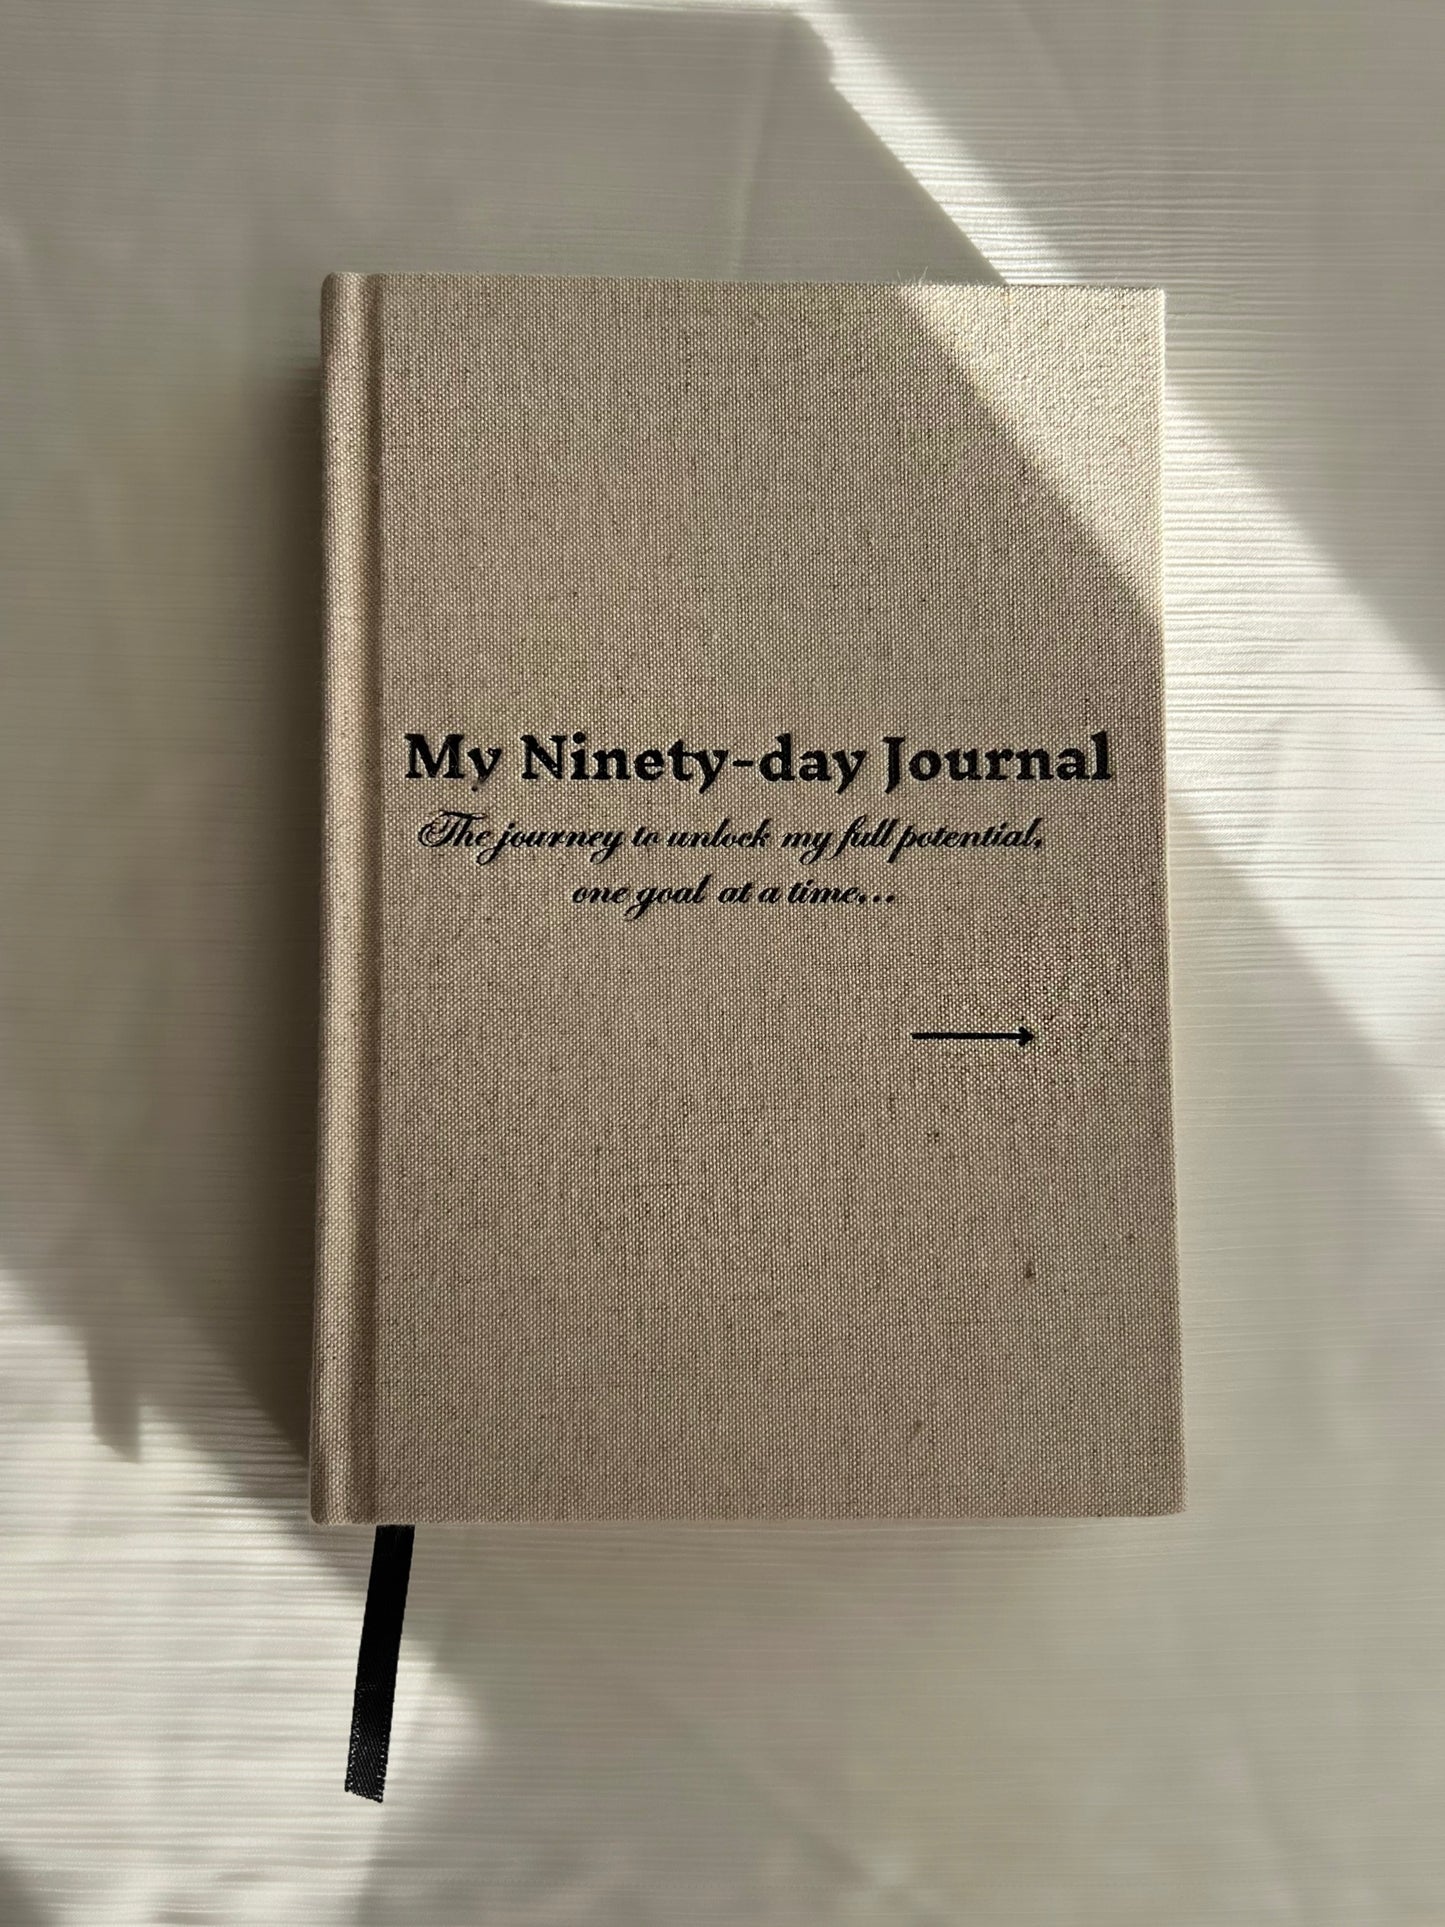 My Ninety-day Journal